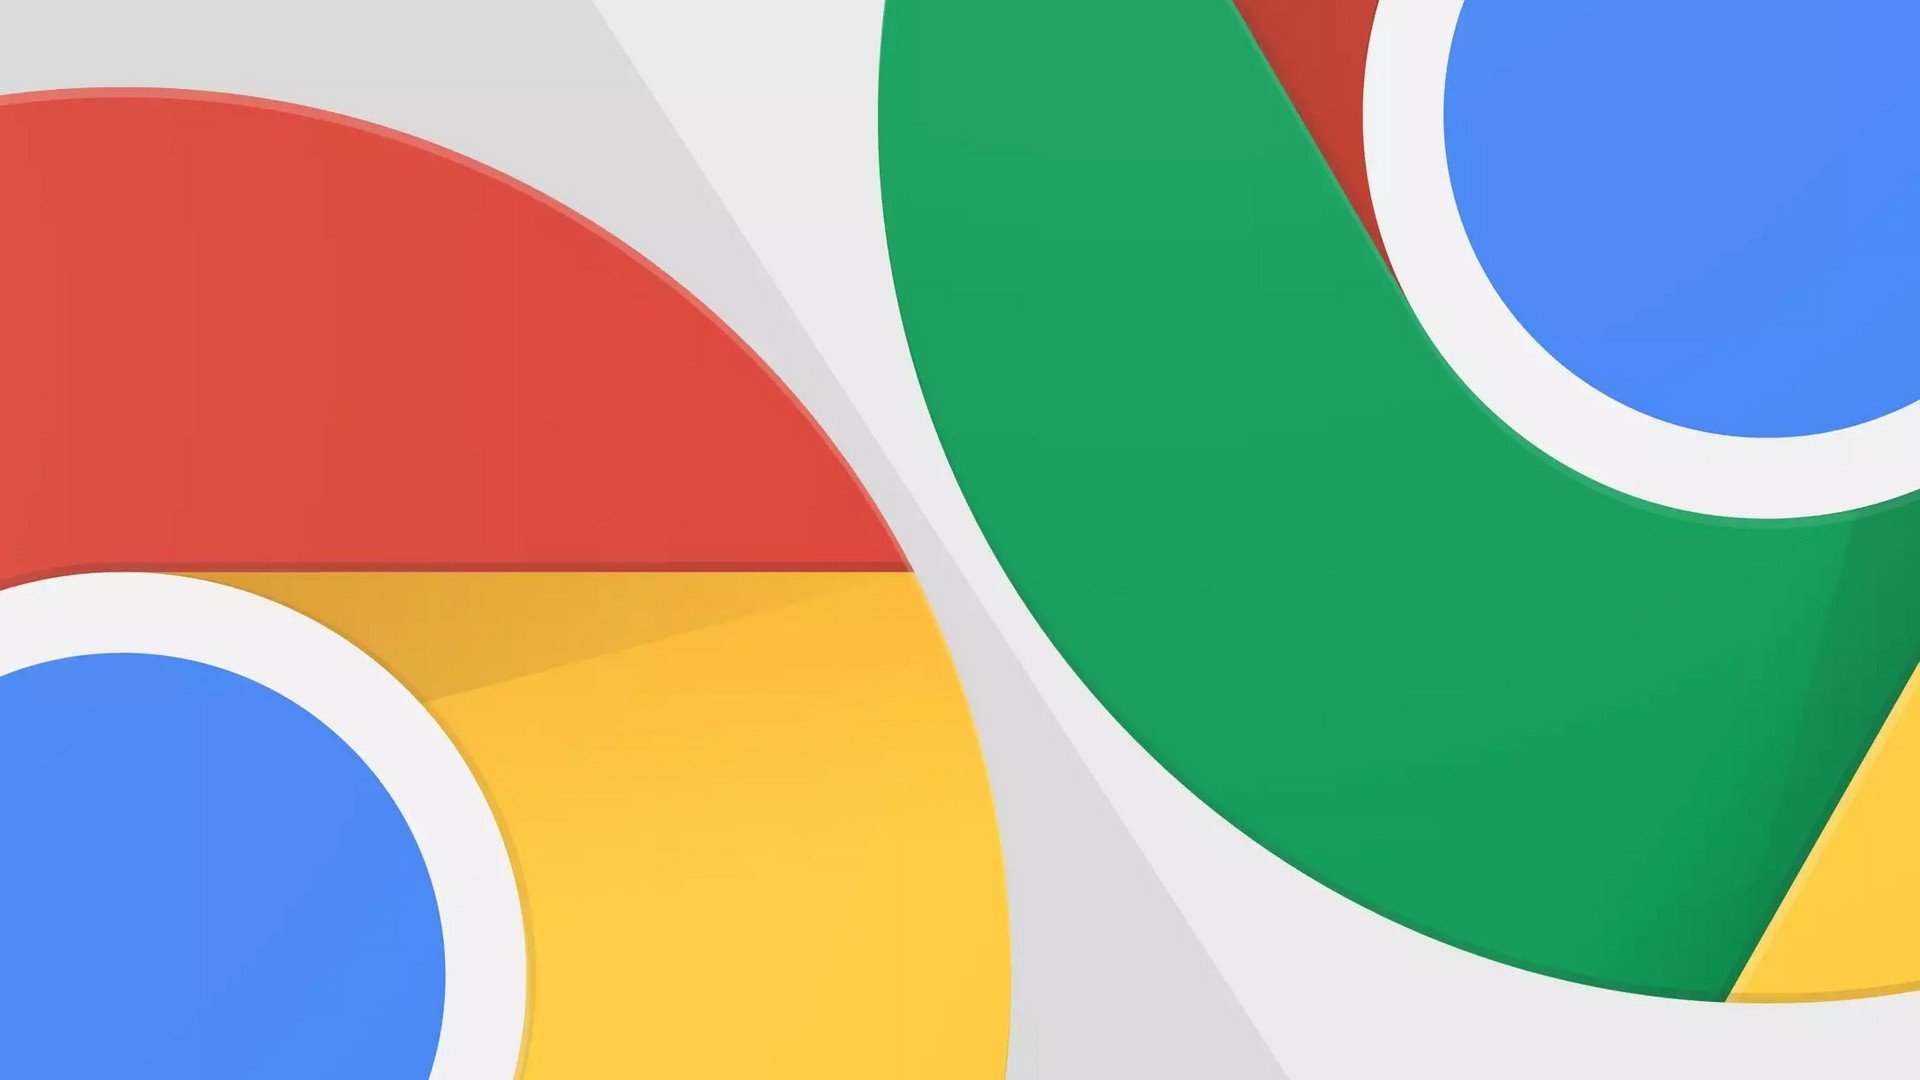 Google altera ícone do Chrome depois de 8 anos sem mudanças thumbnail